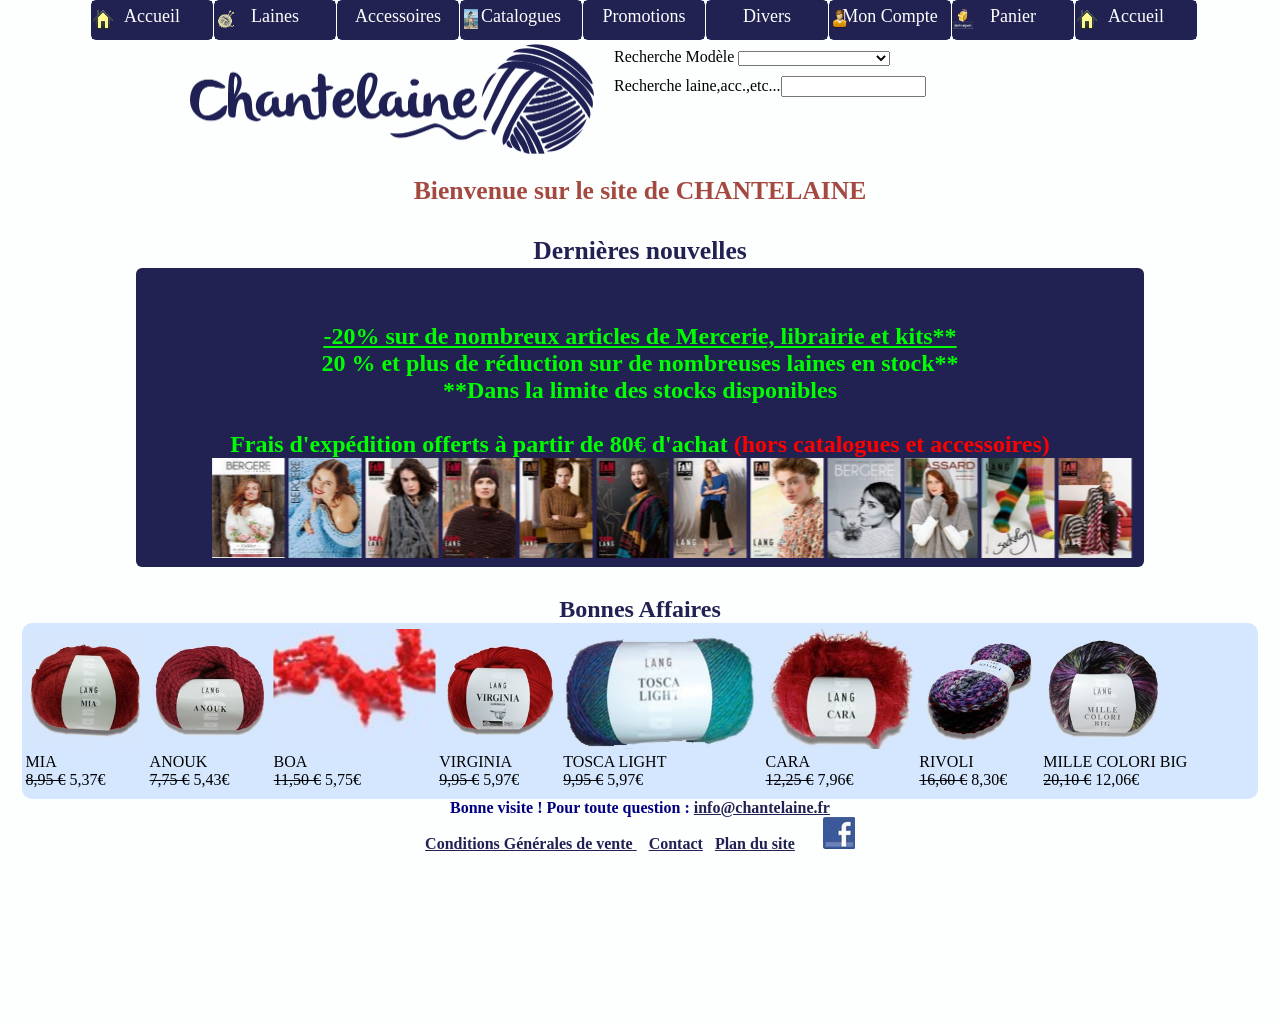 www.chantelaine.fr